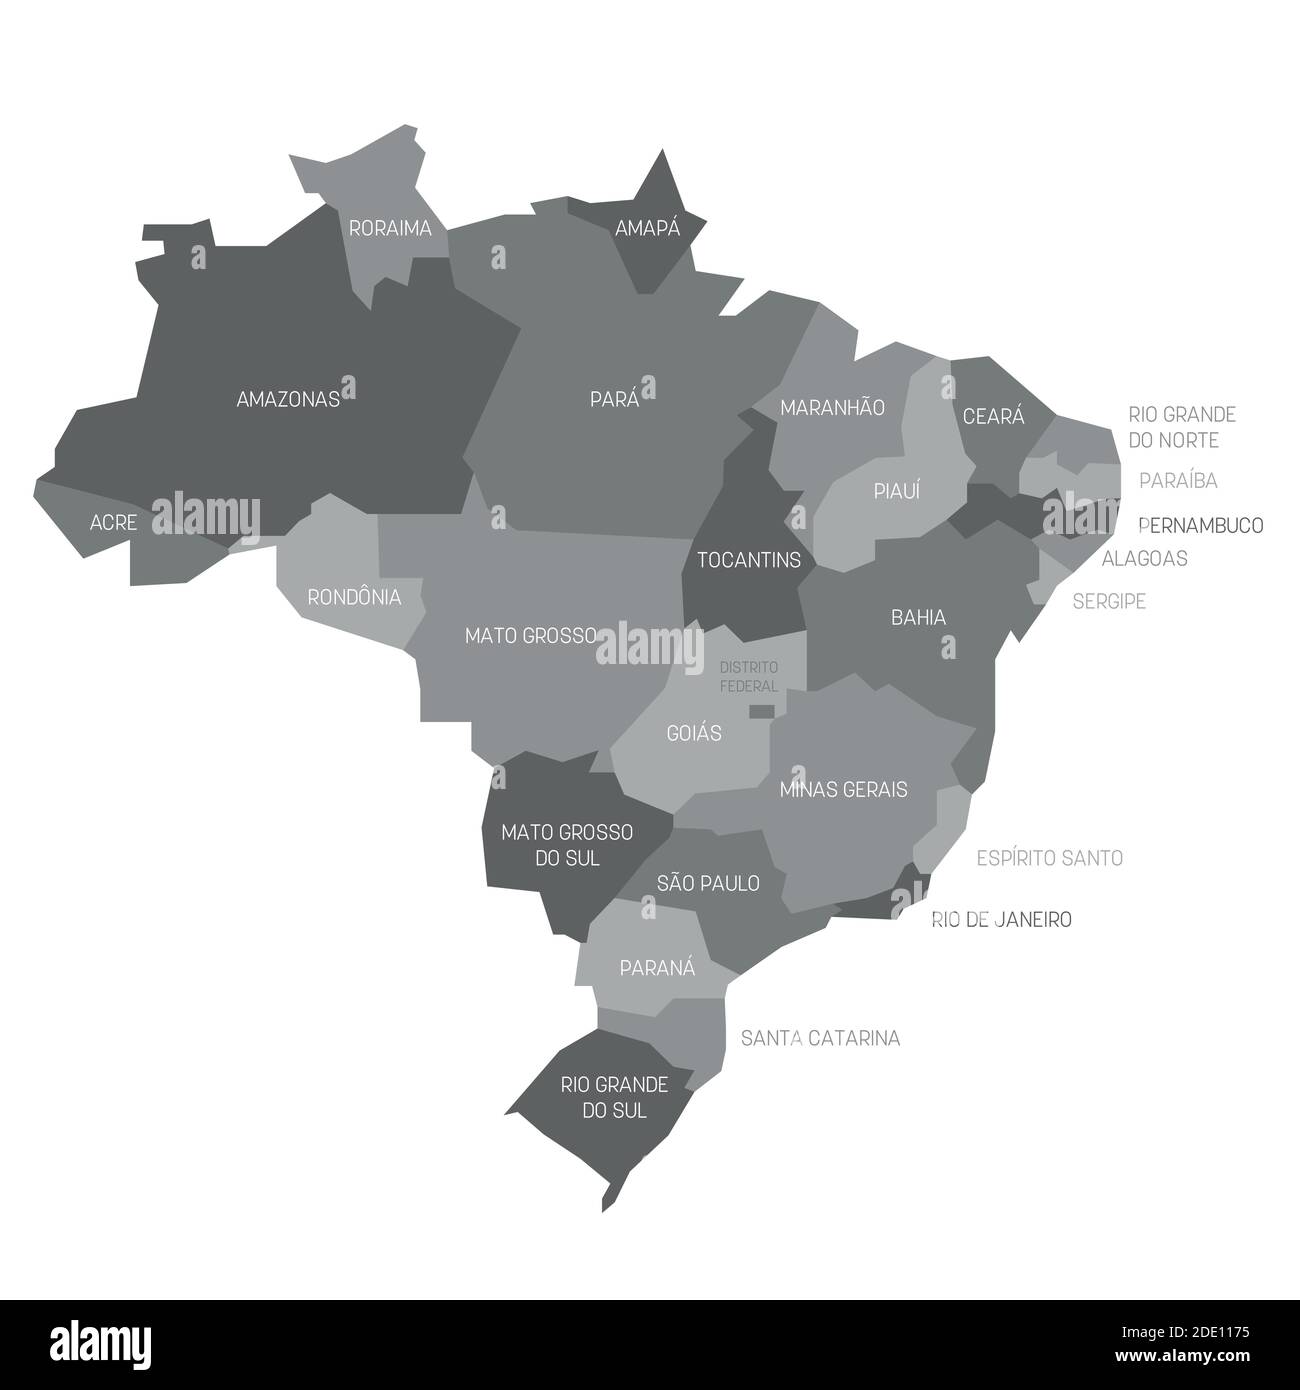 Graue politische Landkarte von Brasilien. Verwaltungsabteilungen - Staaten. Einfache flache Vektorkarte mit Beschriftungen. Stock Vektor